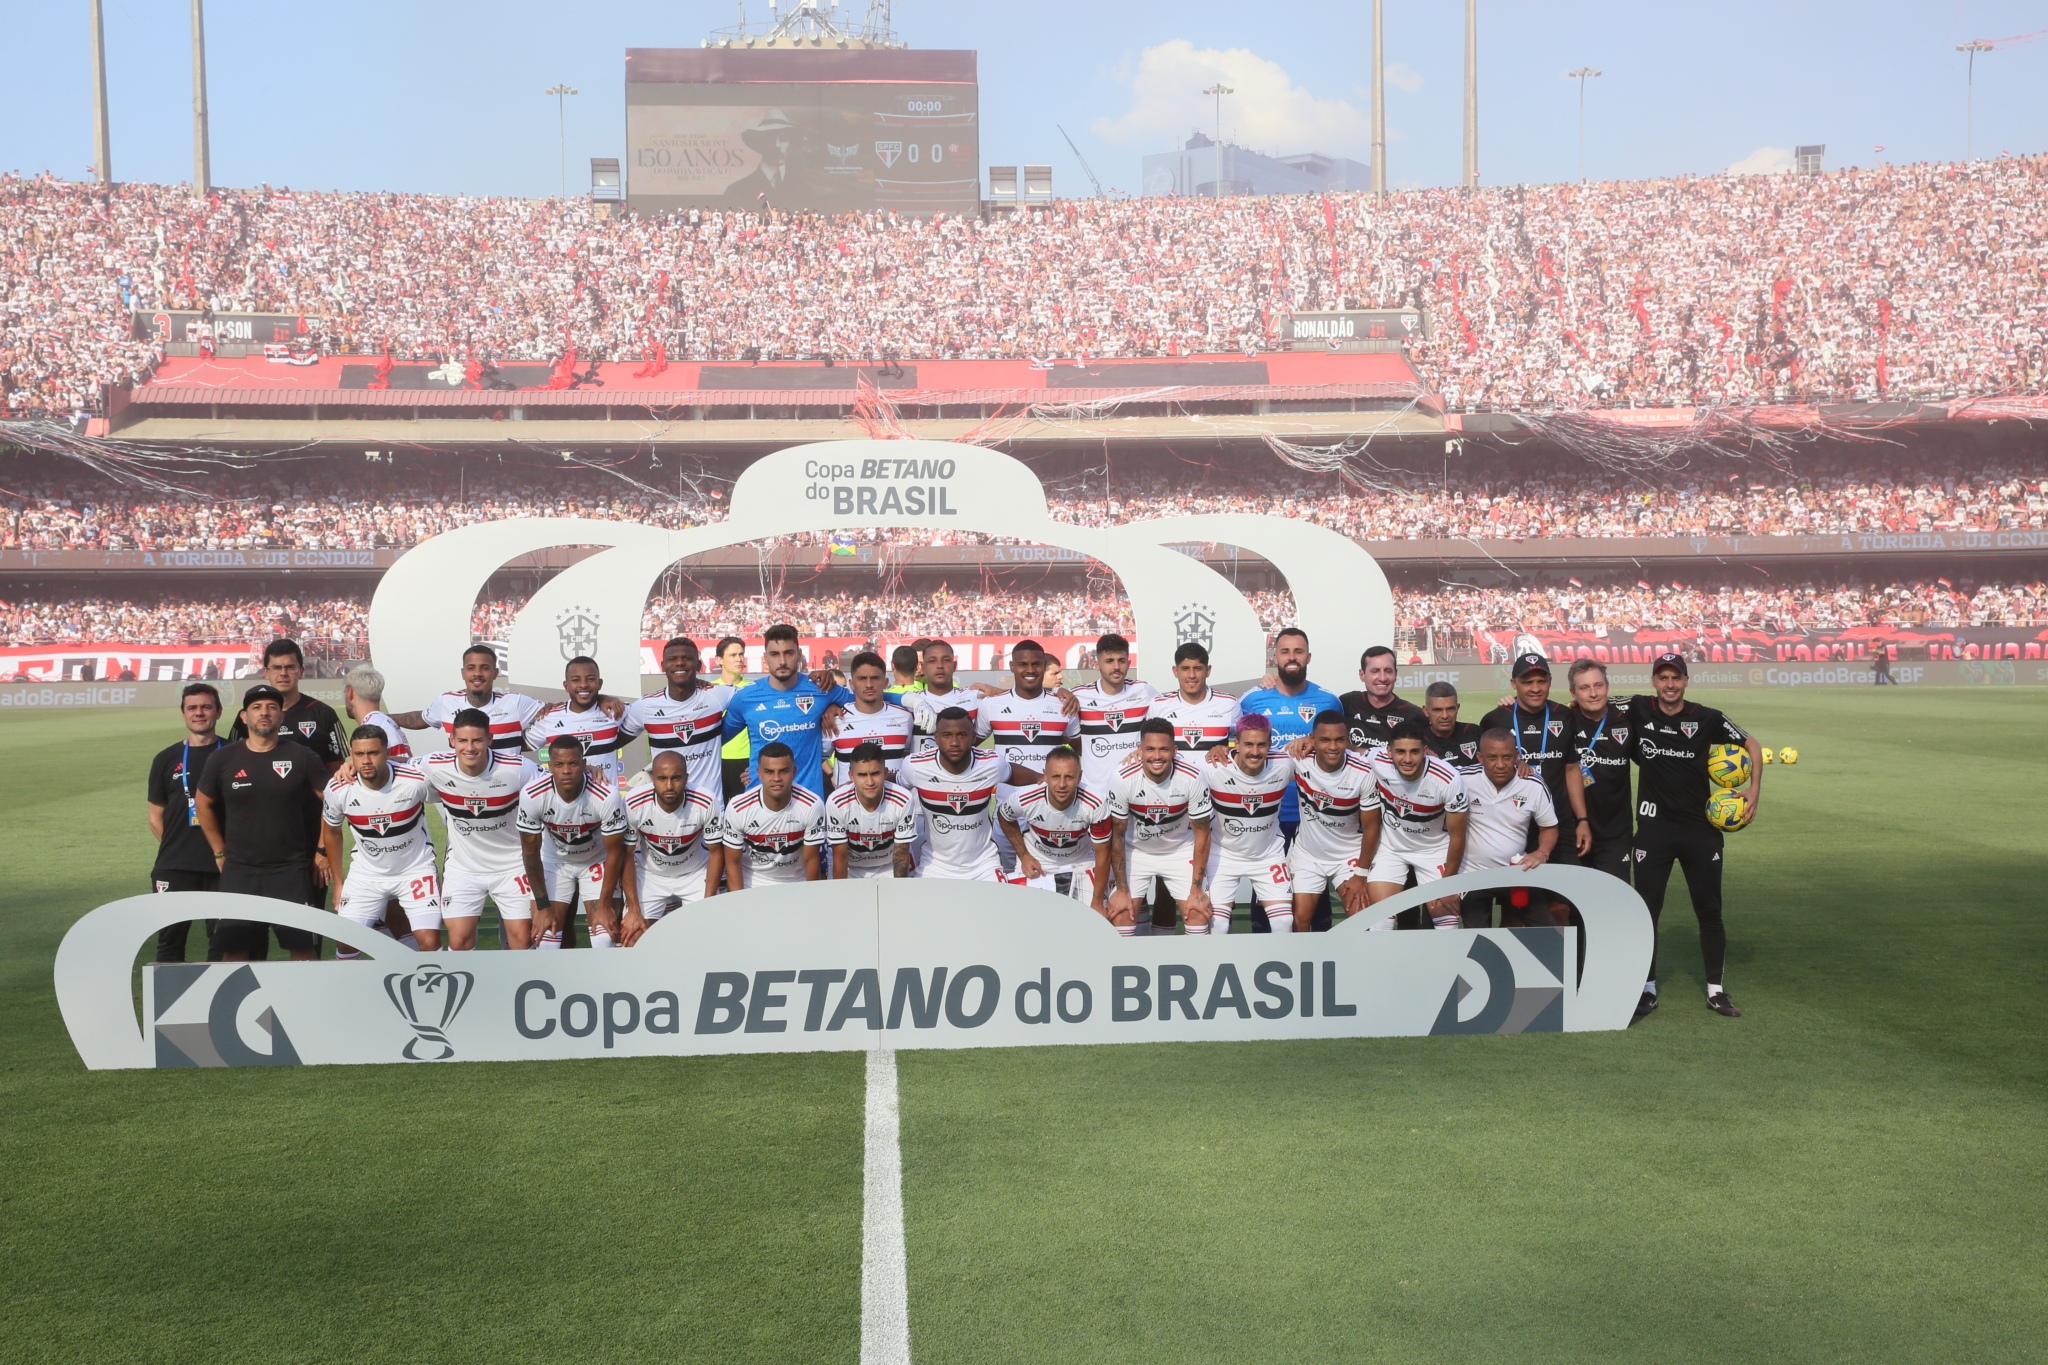 Copa do Brasil 1995 - Títulos do Corinthians